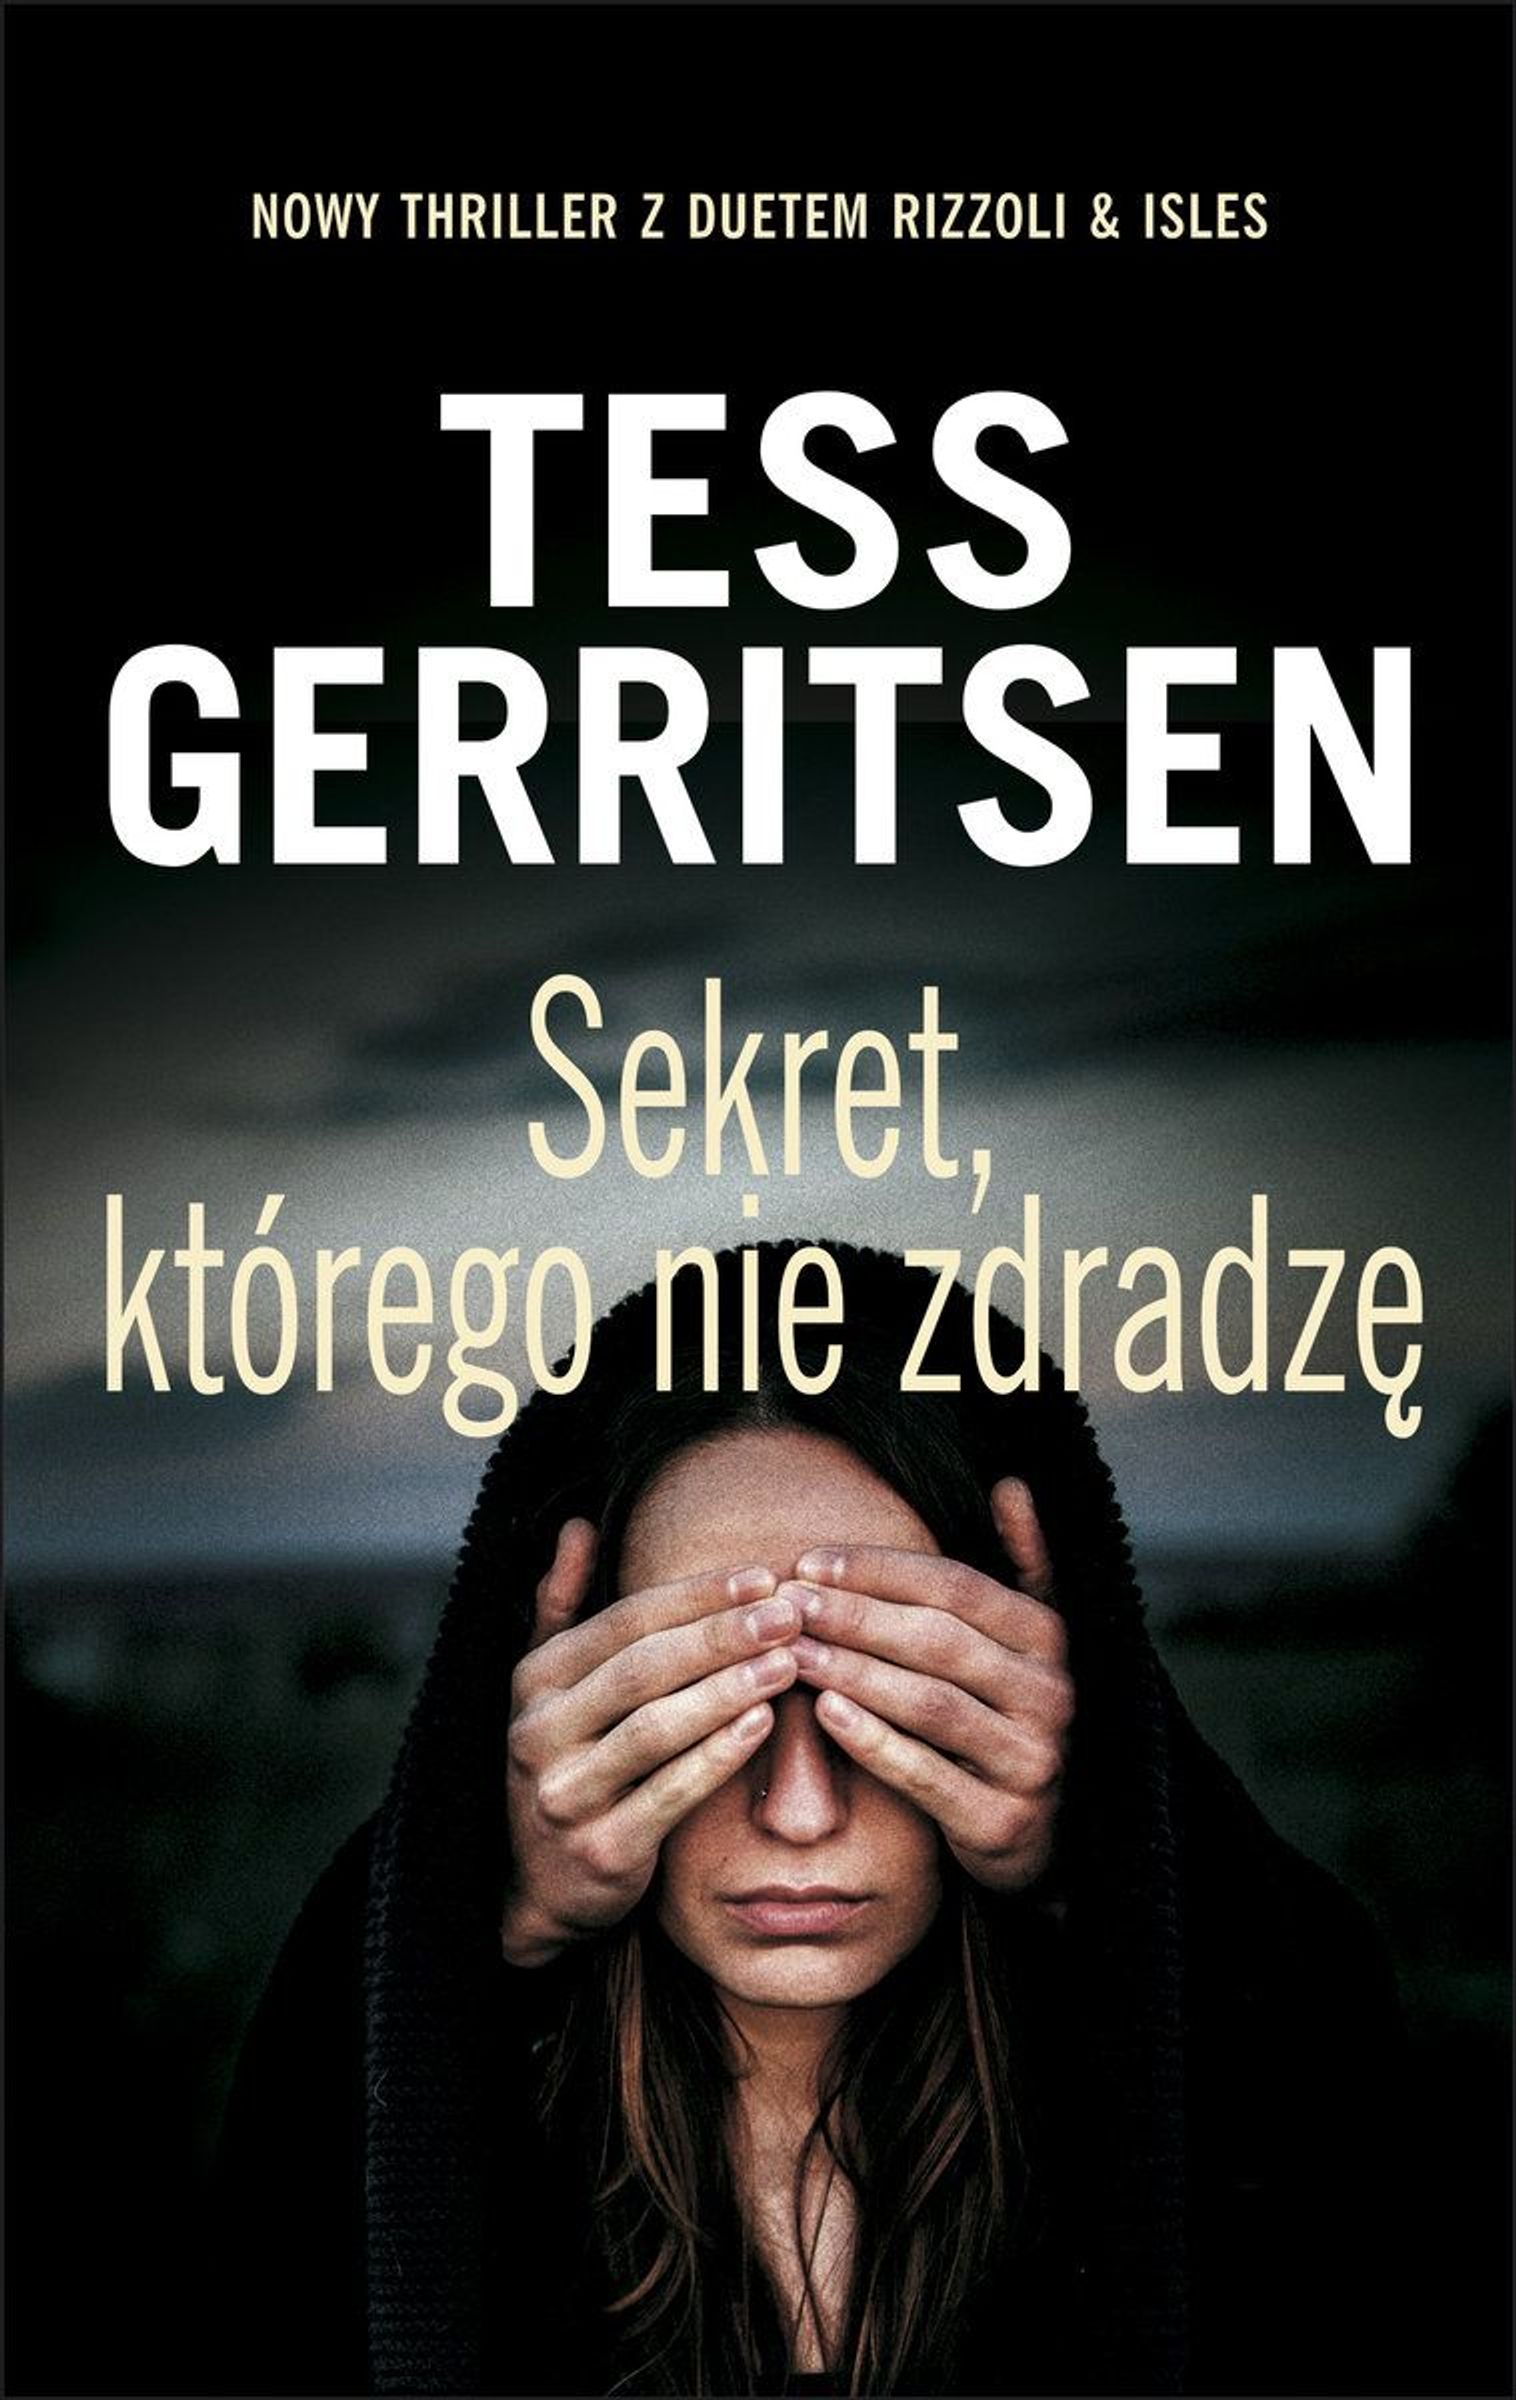 Cover of Tess Gerritsen's “The Secret I Will Not Reveal”